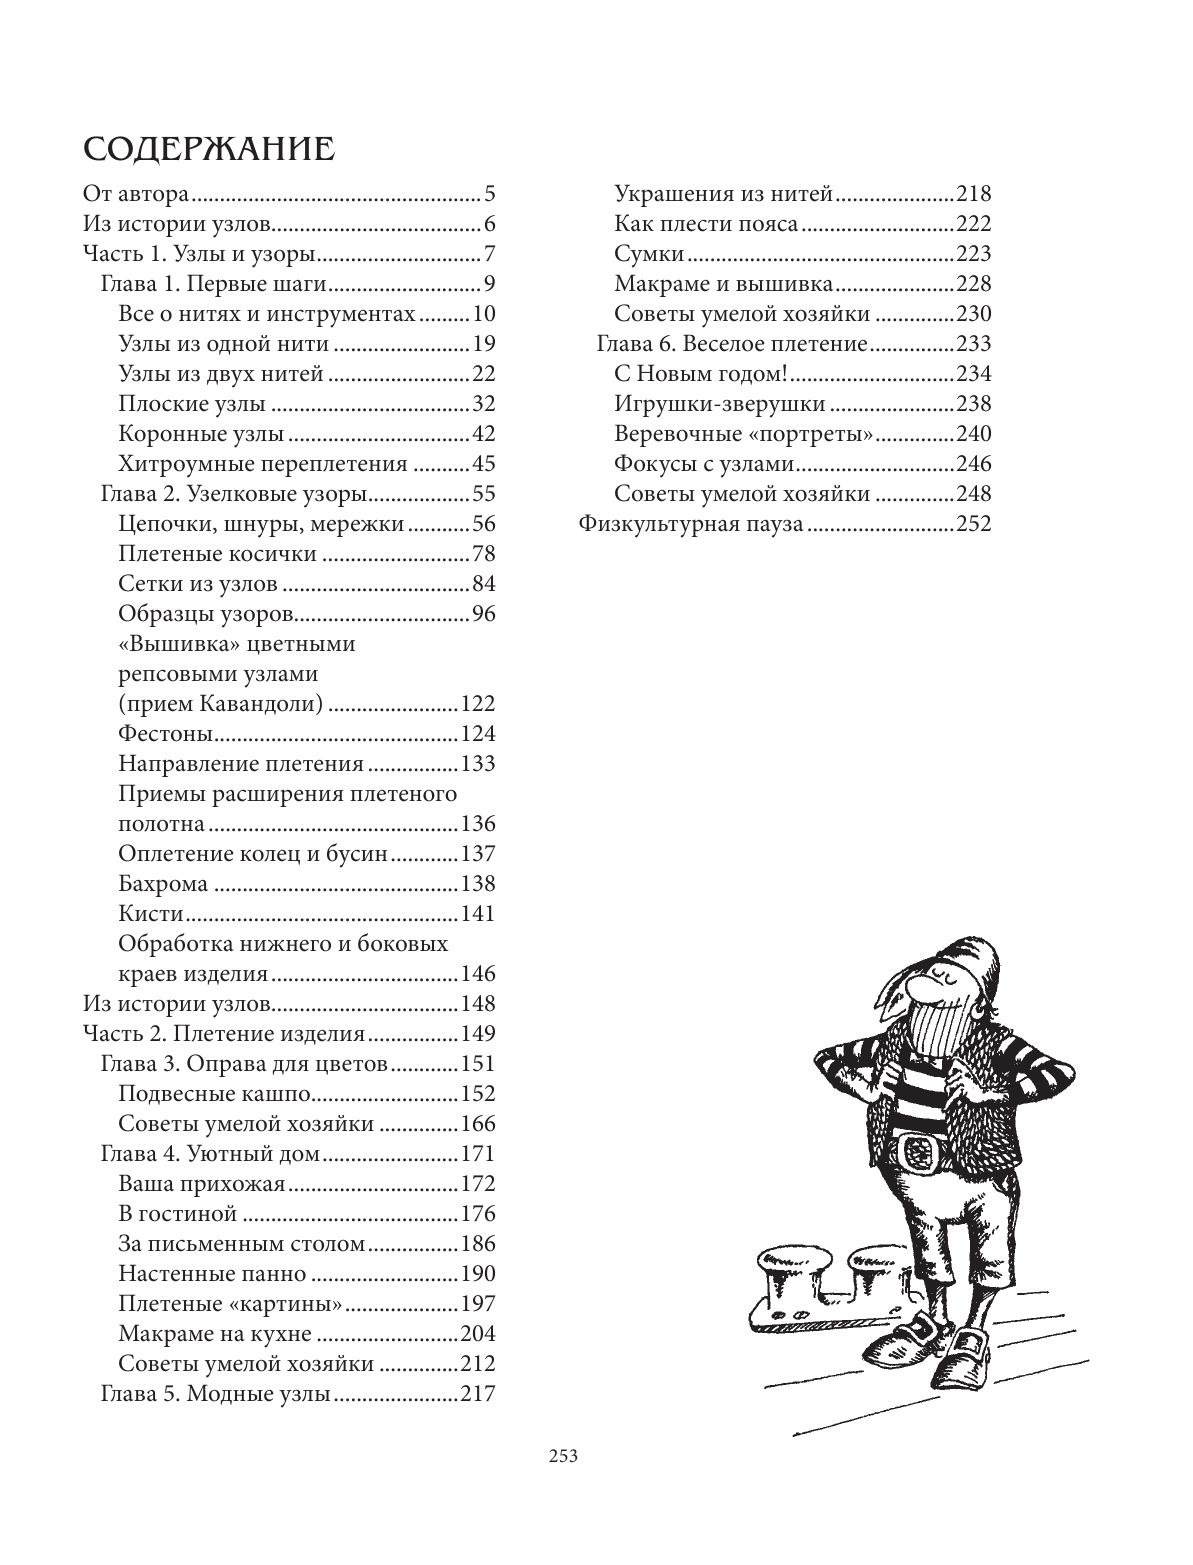 Азбука МАКРАМЕ. Самый полный авторский курс вязания узлов и плетения. 2-е издание, дополненное и переработанное - фото №3